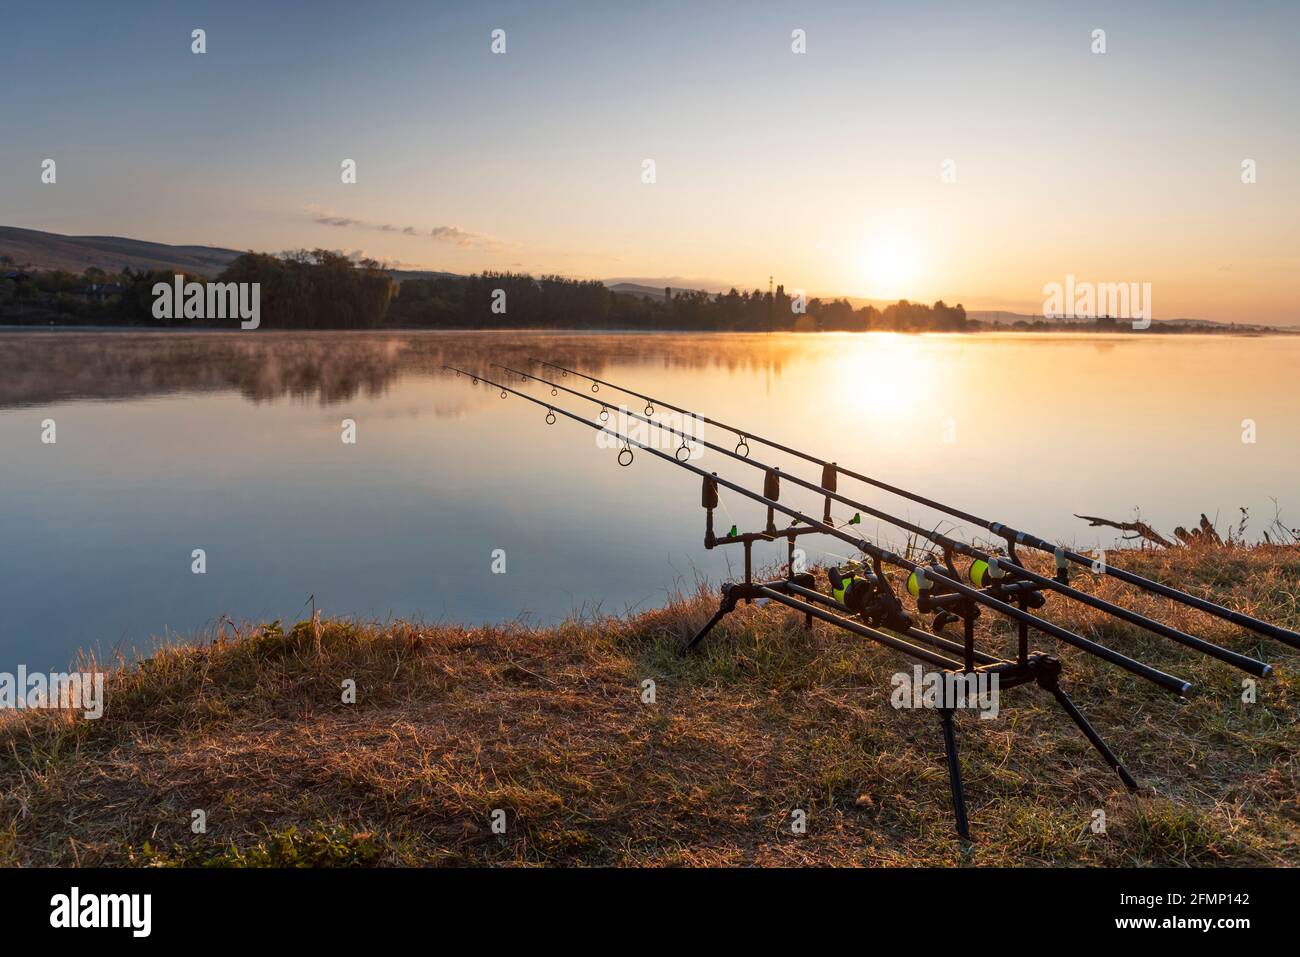 Fishing. Fishing rod on bite alarm. Carp fishing Stock Photo - Alamy